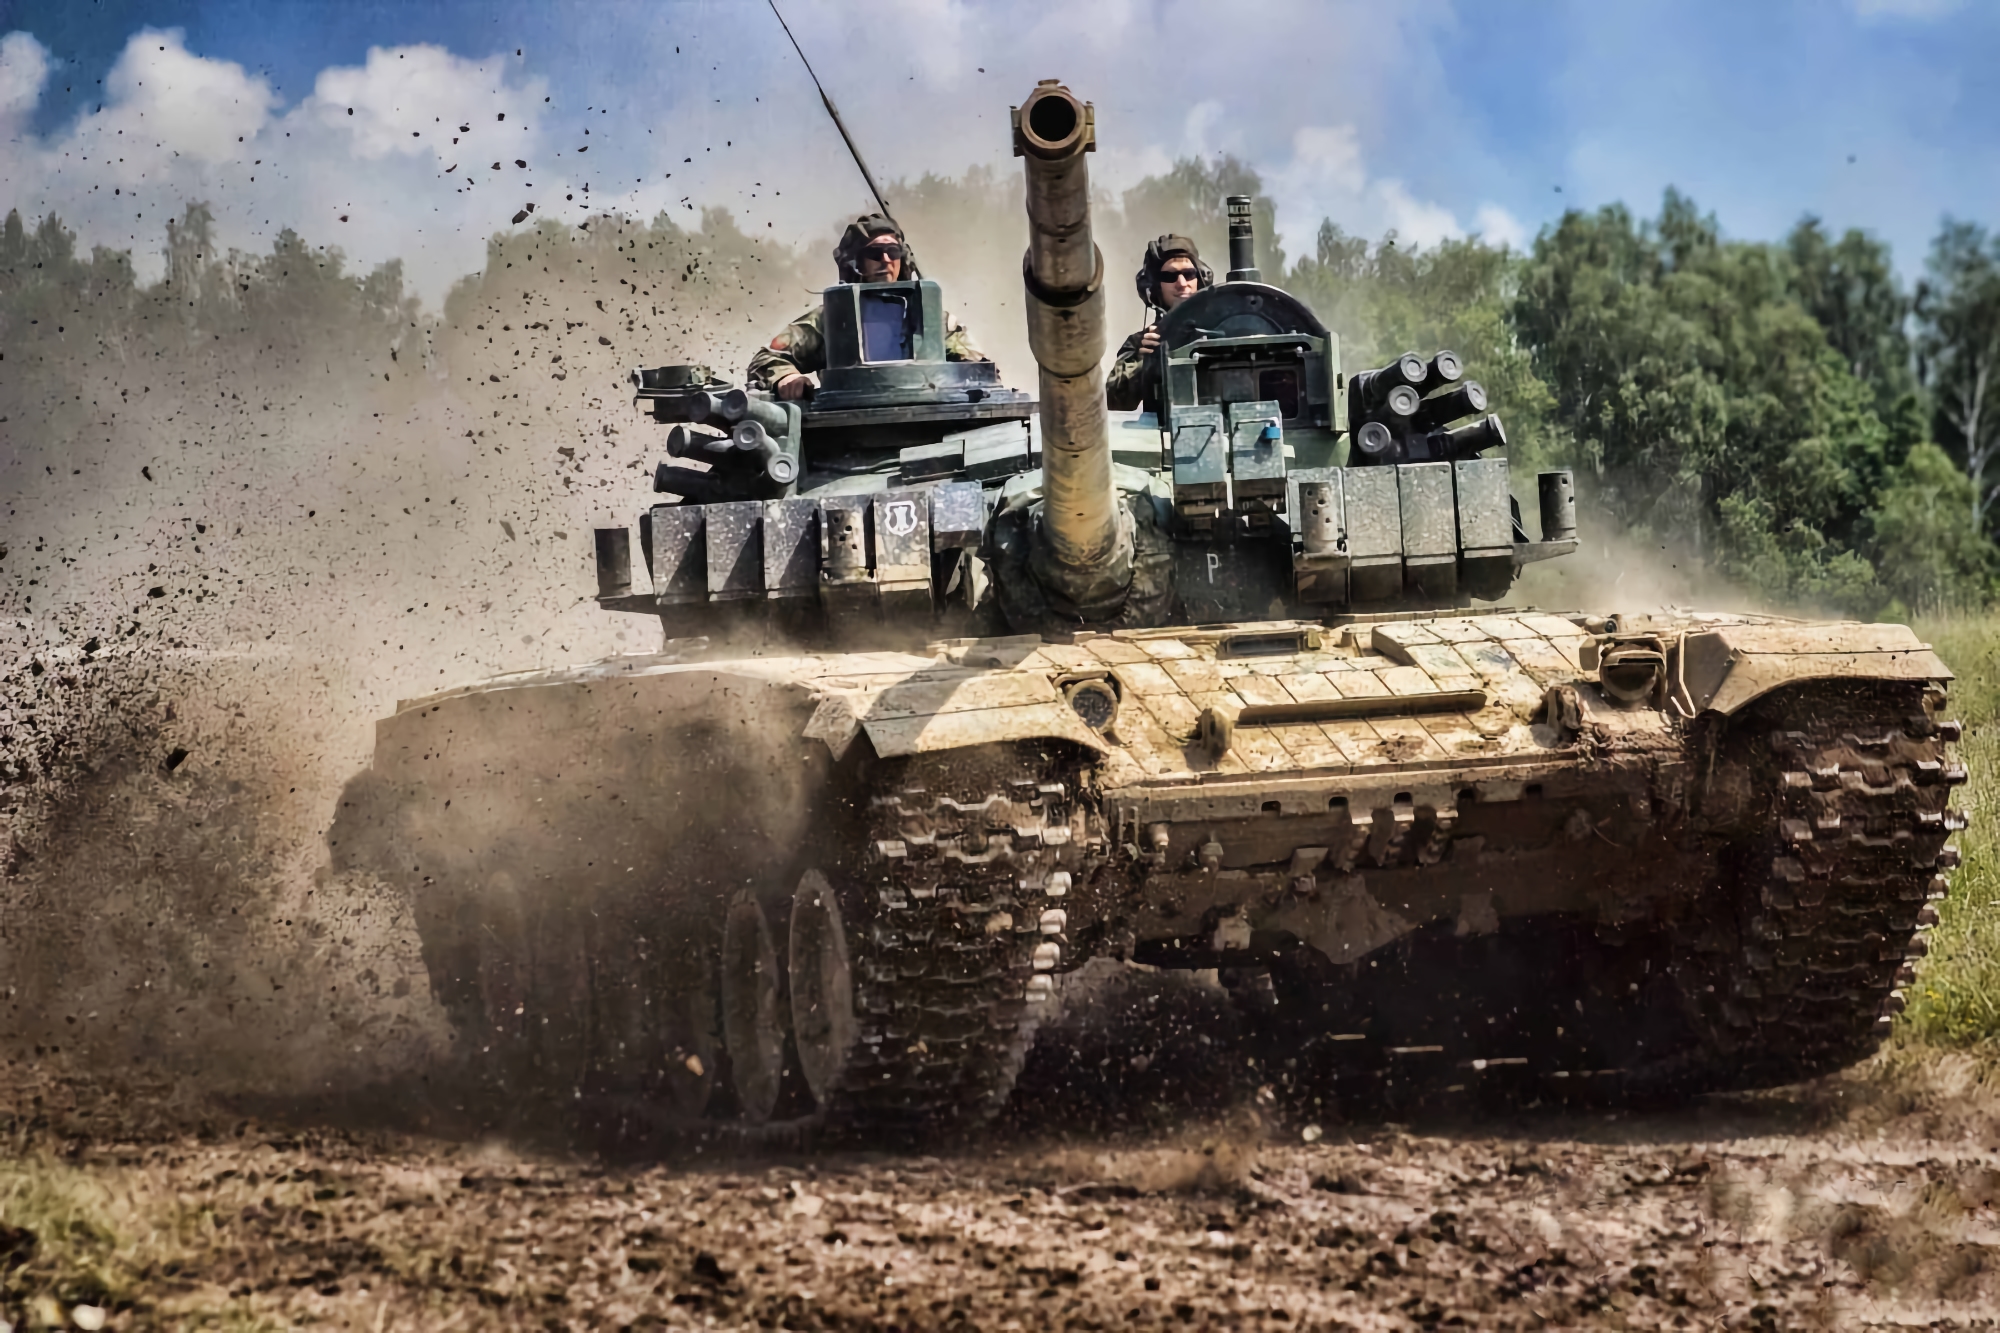 Die Tschechen sammelten 1.300.000 Dollar für den Kauf des T-72 Avenger-Panzers für die Ukraine, einer verbesserten Version des T-72 mit verbesserter Panzerung und moderner Kommunikationstechnik.